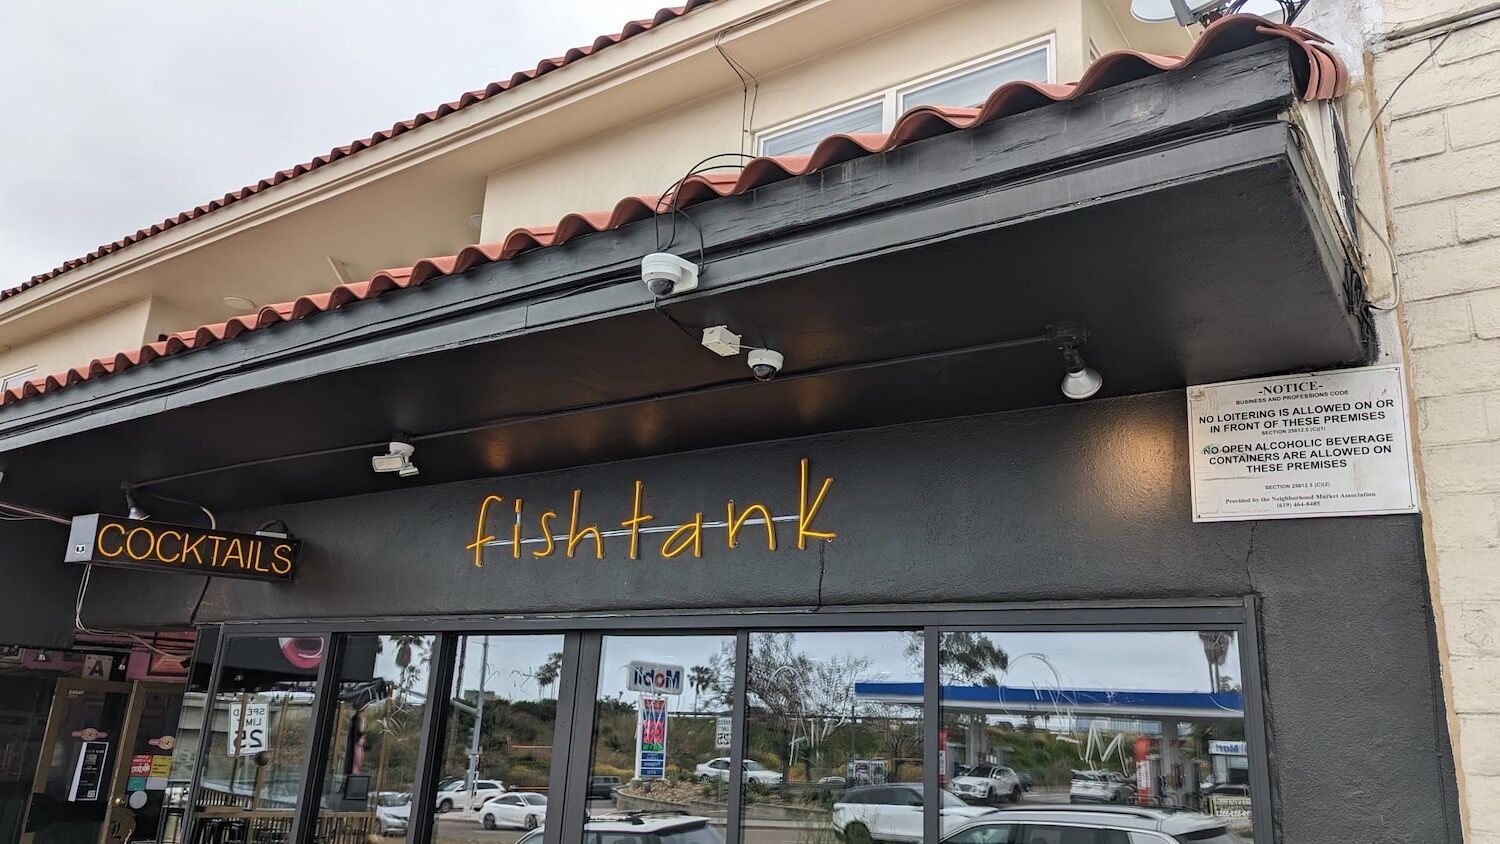 Fishtank SD